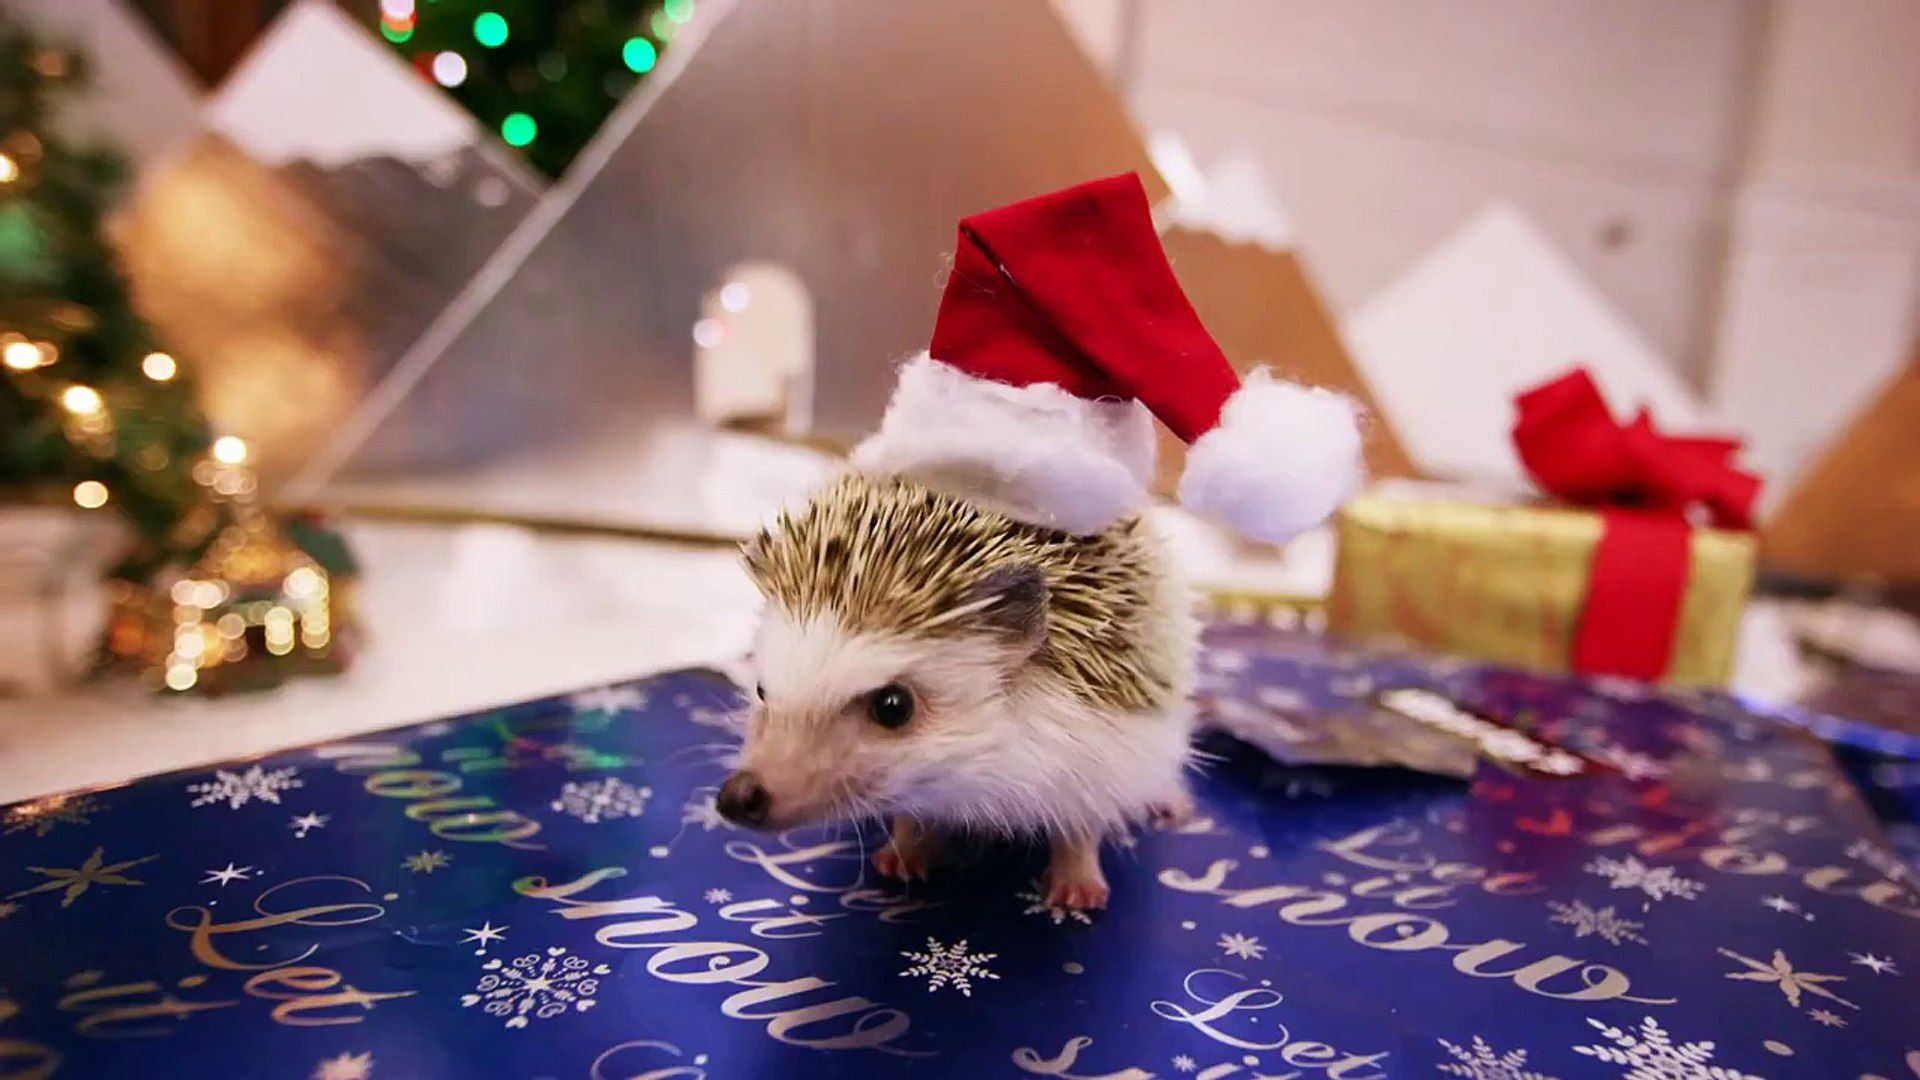 Hedgehog Christmas! In 4K!